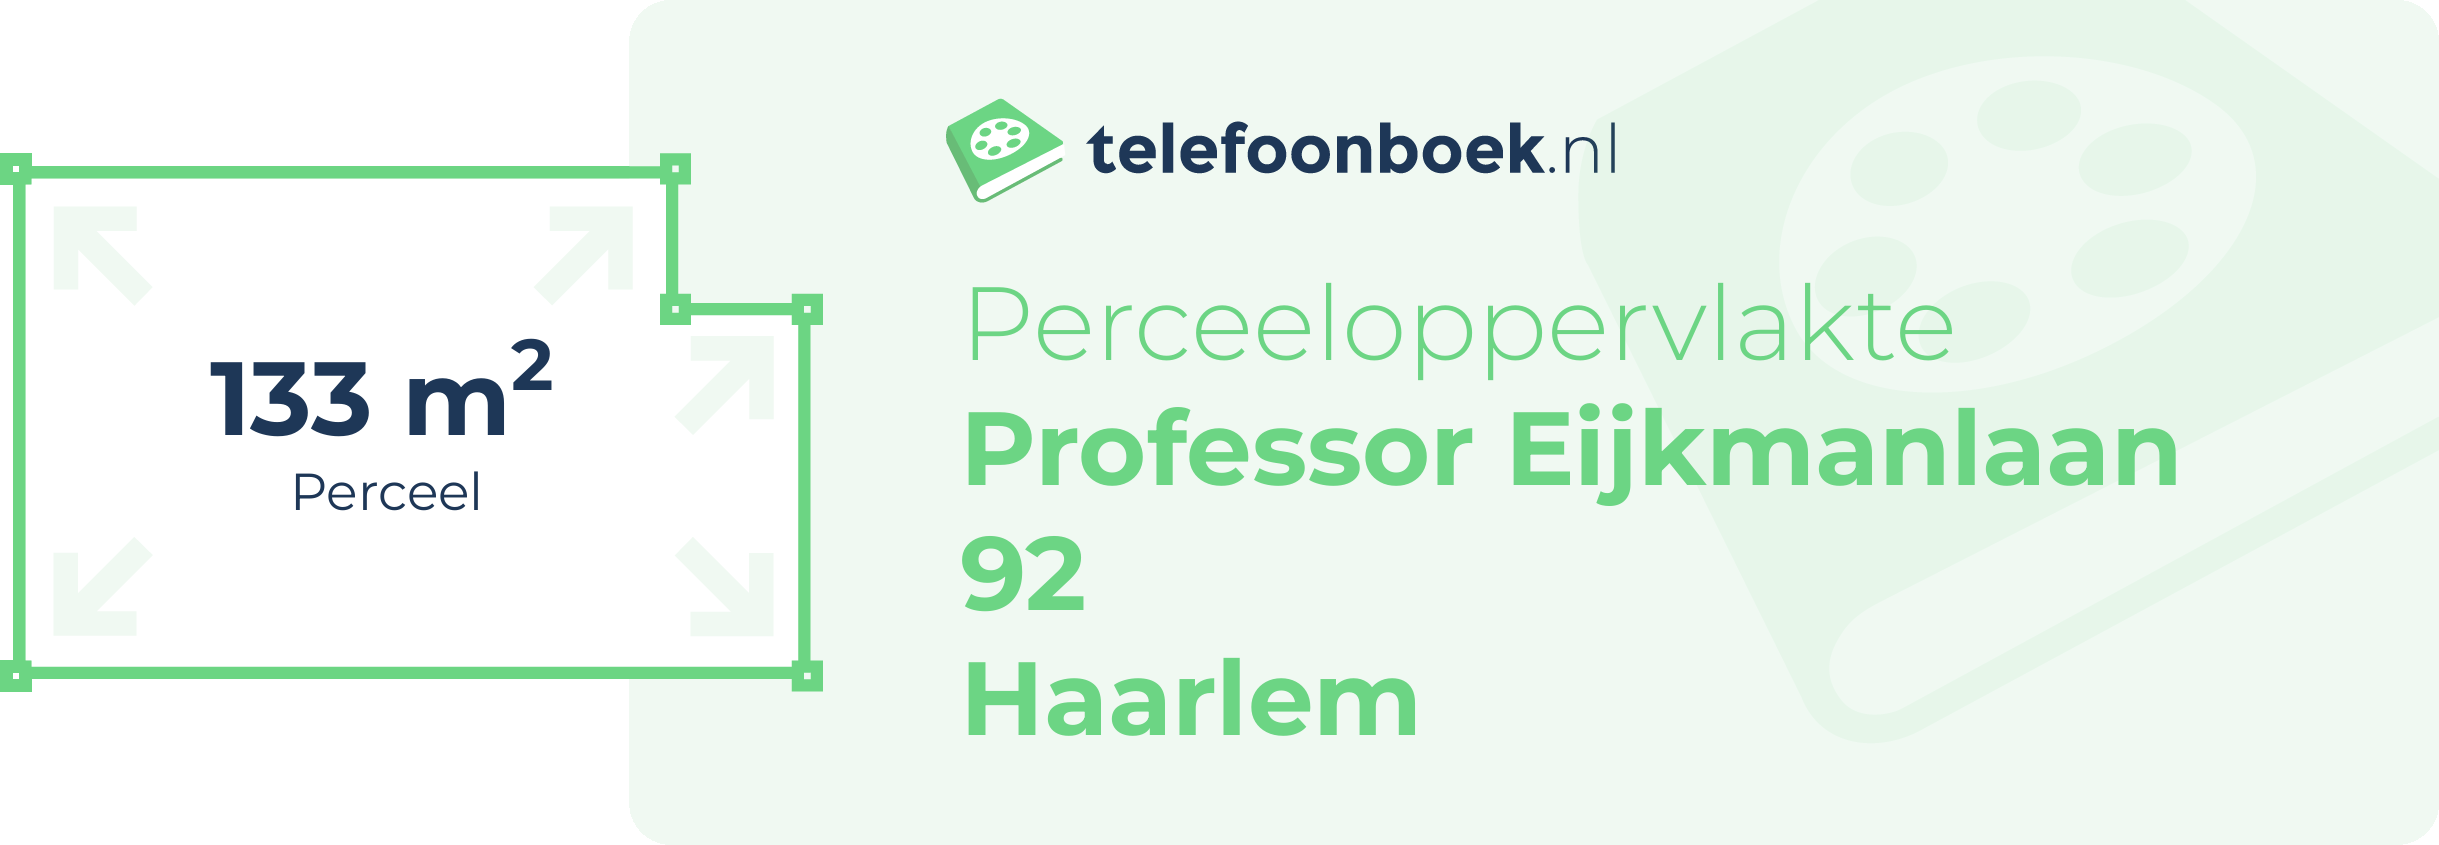 Perceeloppervlakte Professor Eijkmanlaan 92 Haarlem